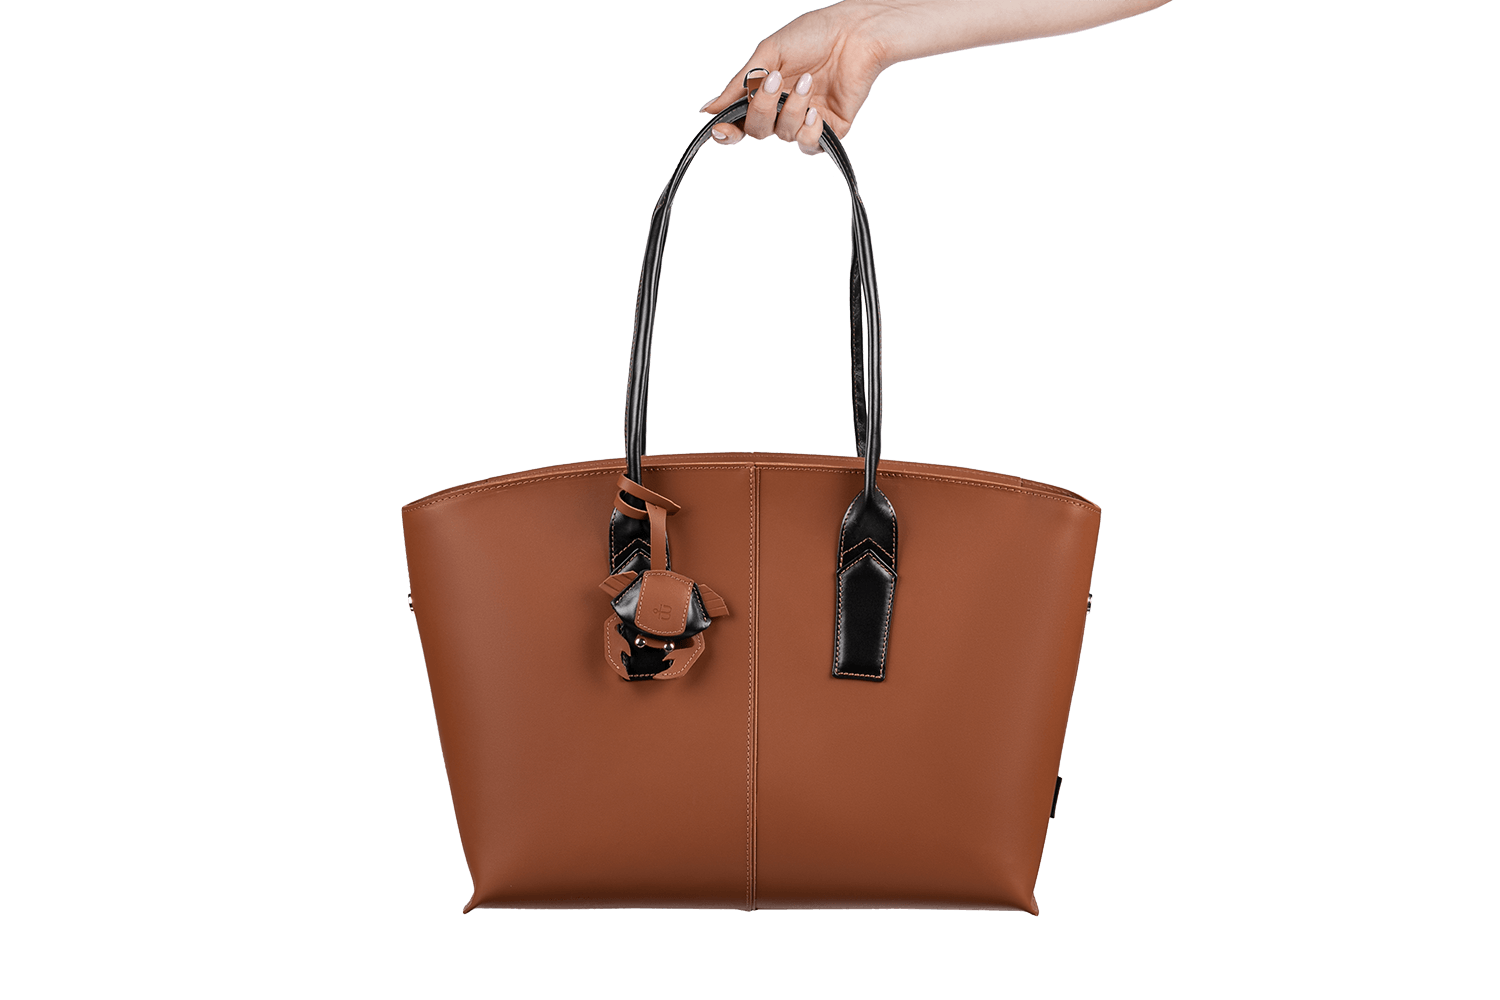 Ярка женская сумка 2 в 1 - тоут и клатч от бренда Верфь и Русского музея